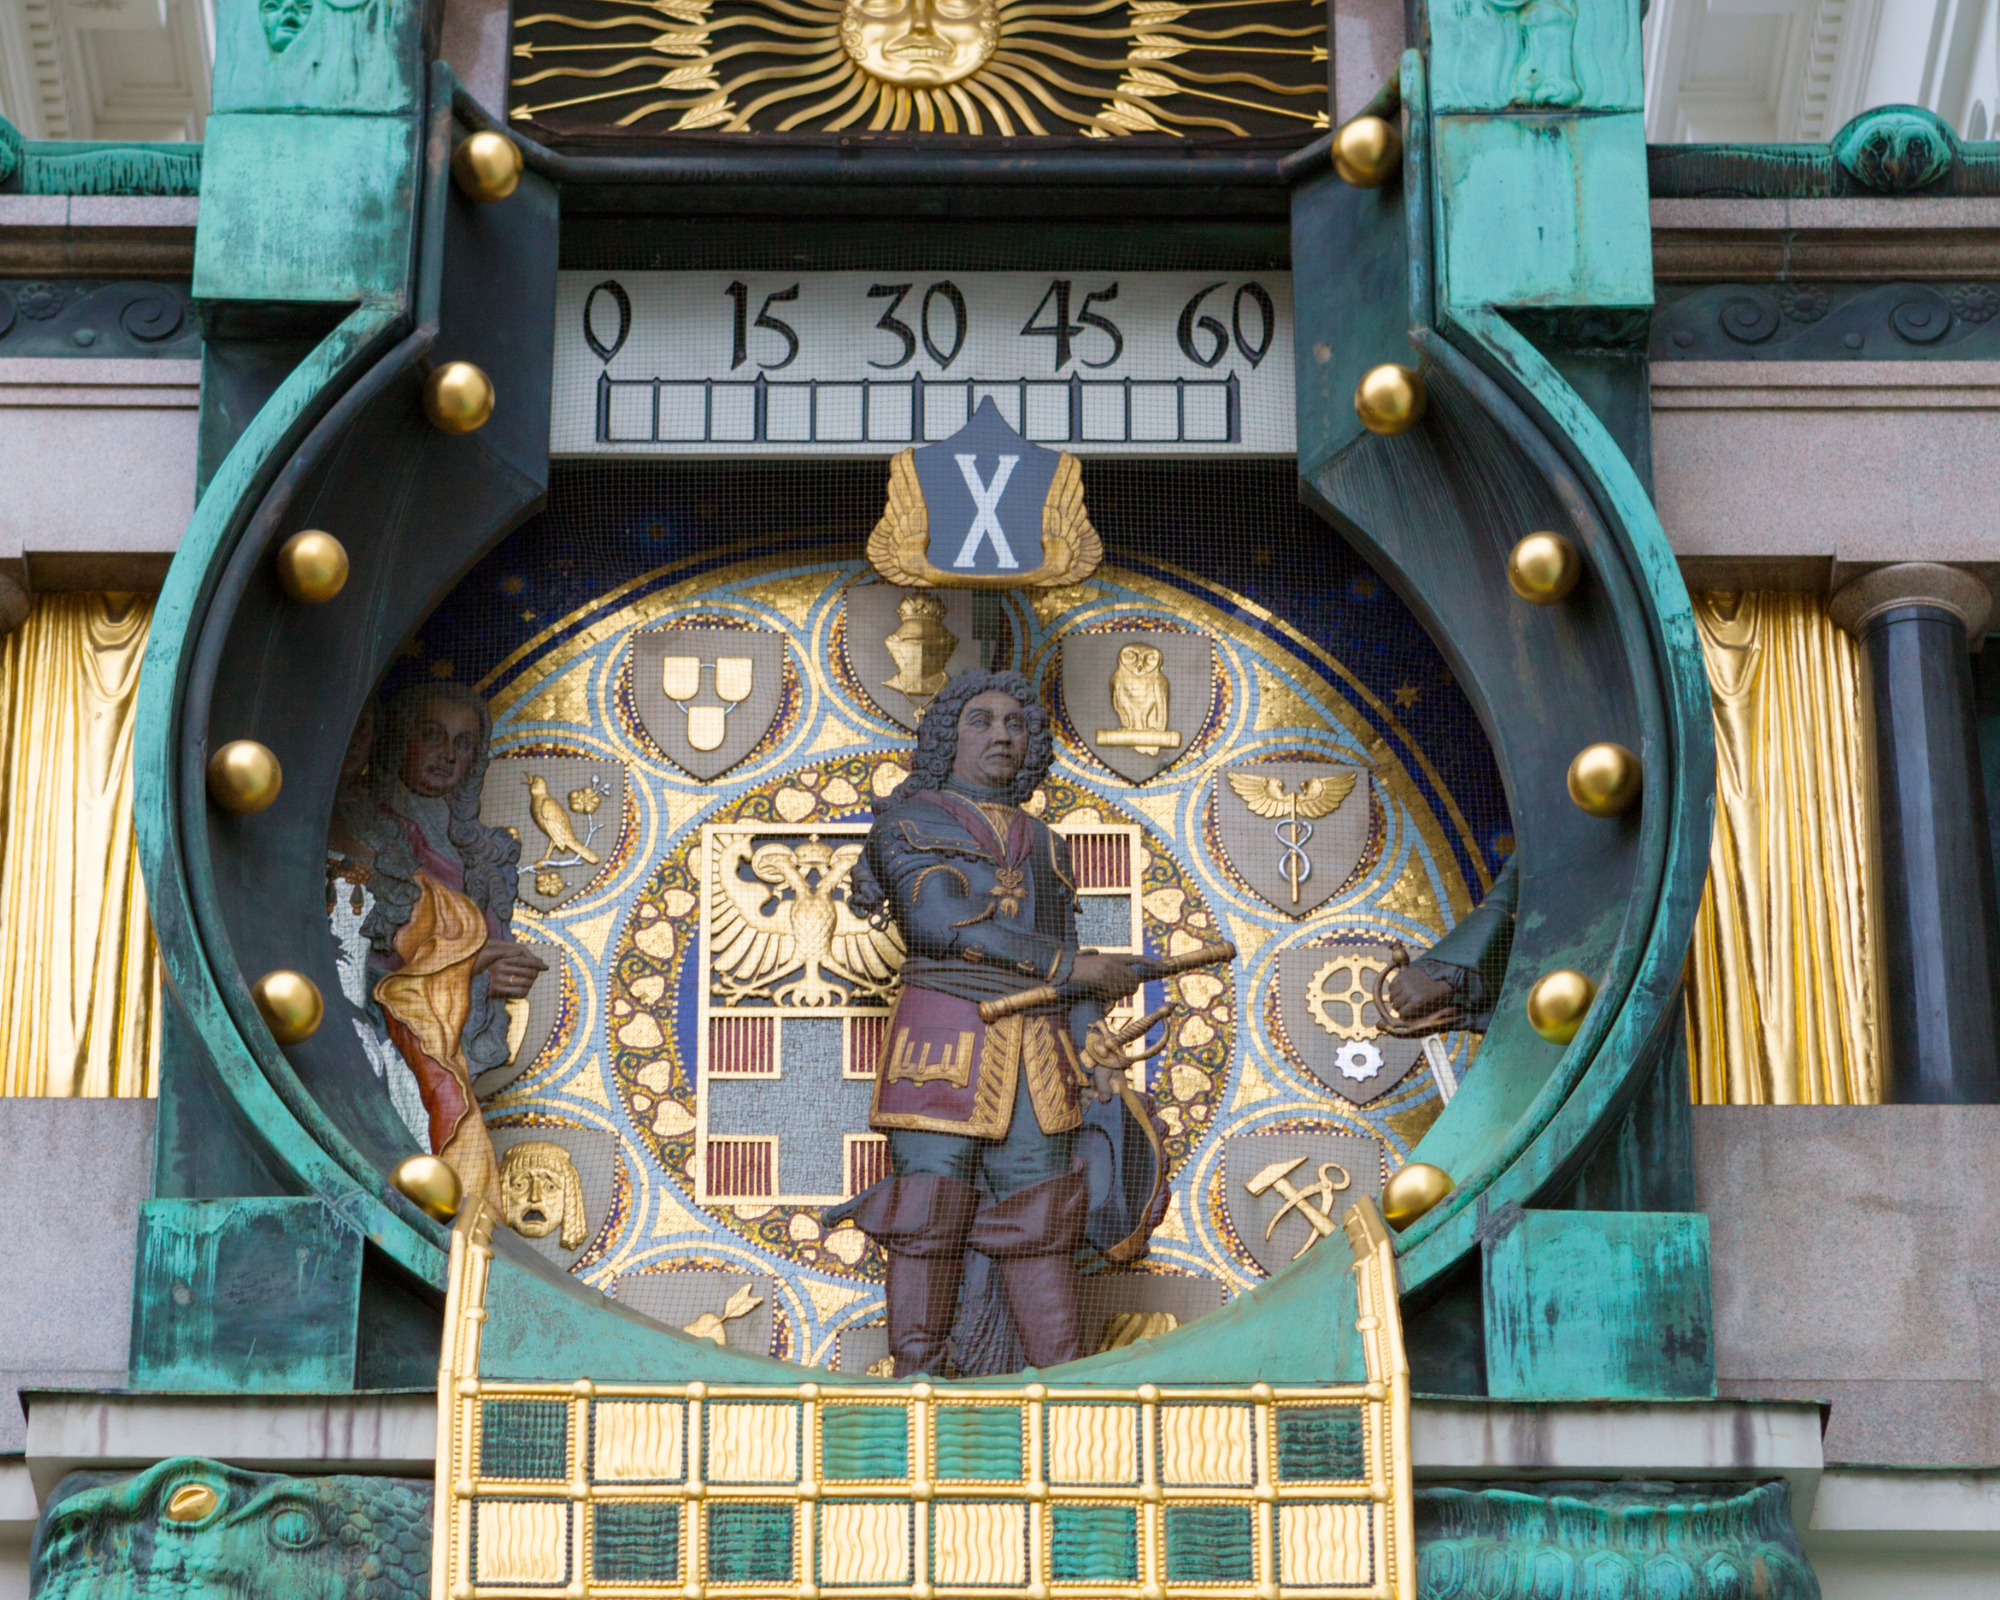 Anchor clock